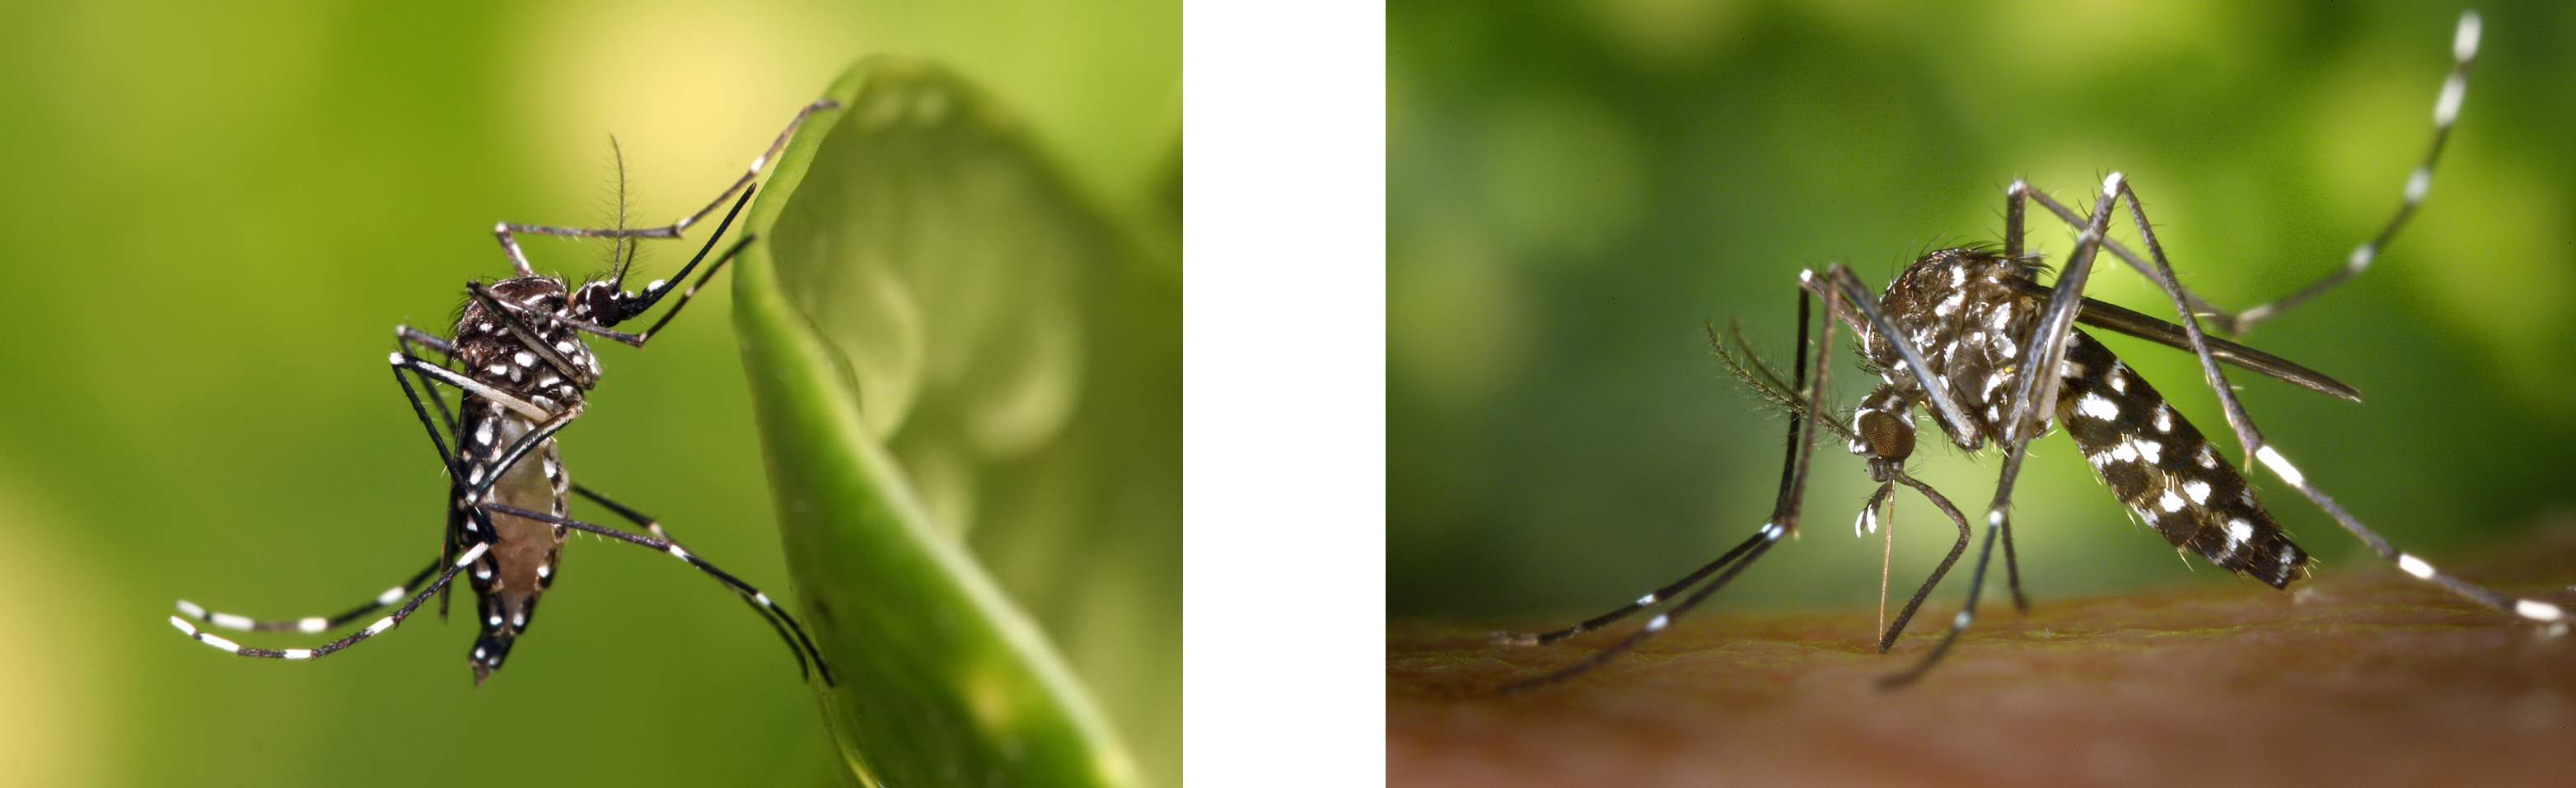 (왼쪽) 뎅기열, 말라리아, 지카 따위를 옮기는 이집트모기입니다. 다행히 우리나라에 사는 종은 아니예요. Wikimedia Commons/Muhammad Mahdi Karim, Aedes aegypti.jpg (오른쪽) 한국에도 널리 서식하는 흰줄숲모기입니다. CDC/James Ganathany.